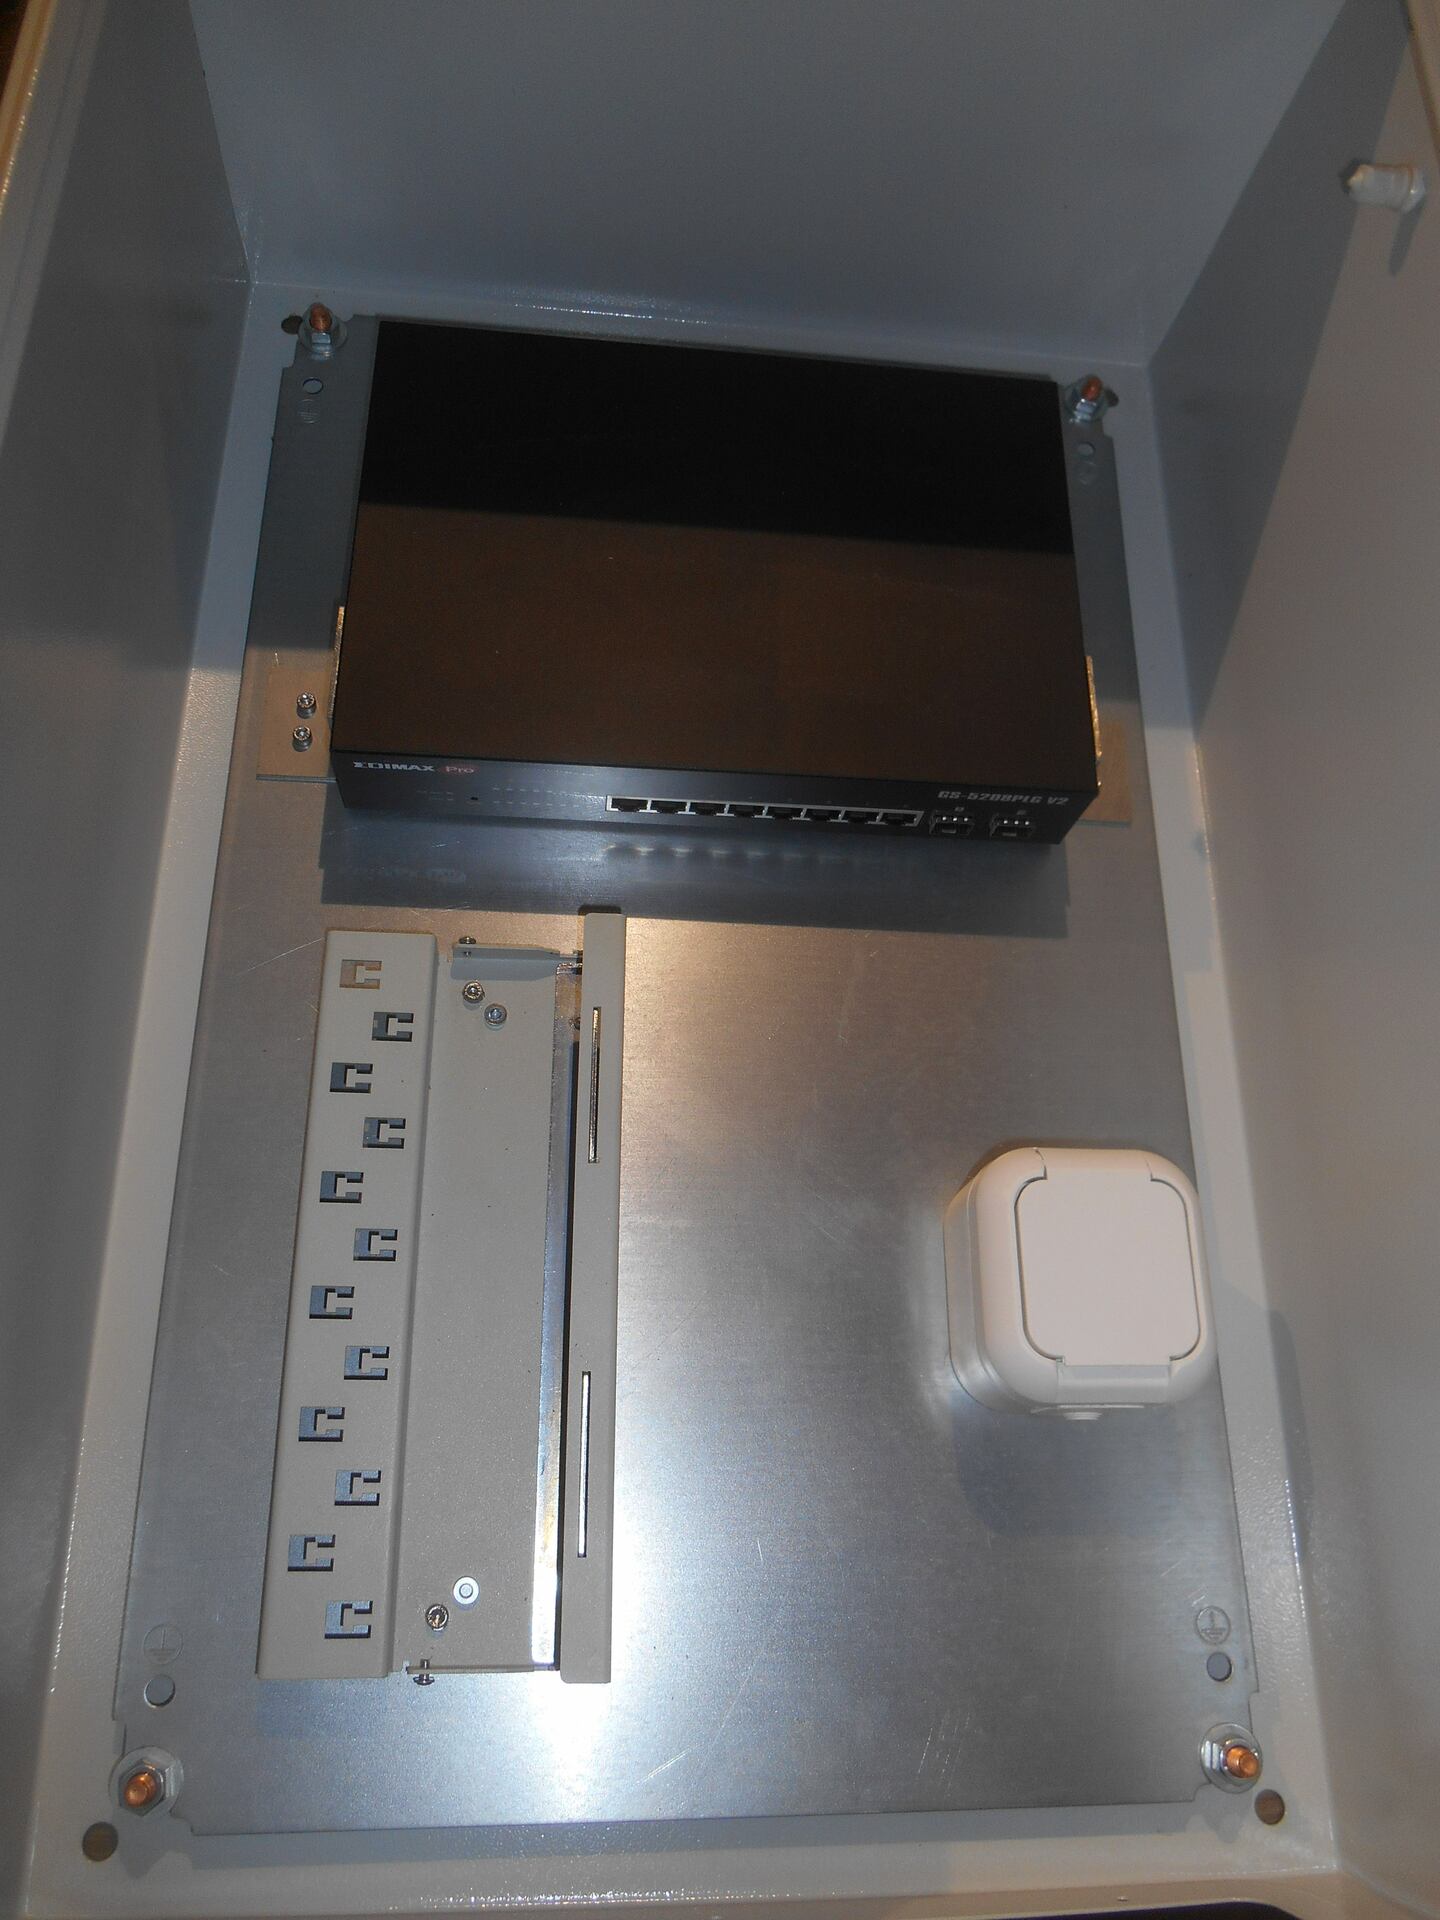 Sonderwinkel zur Befestigung eines Desktop-Switches an der Montageplatte in einem Schaltschrank